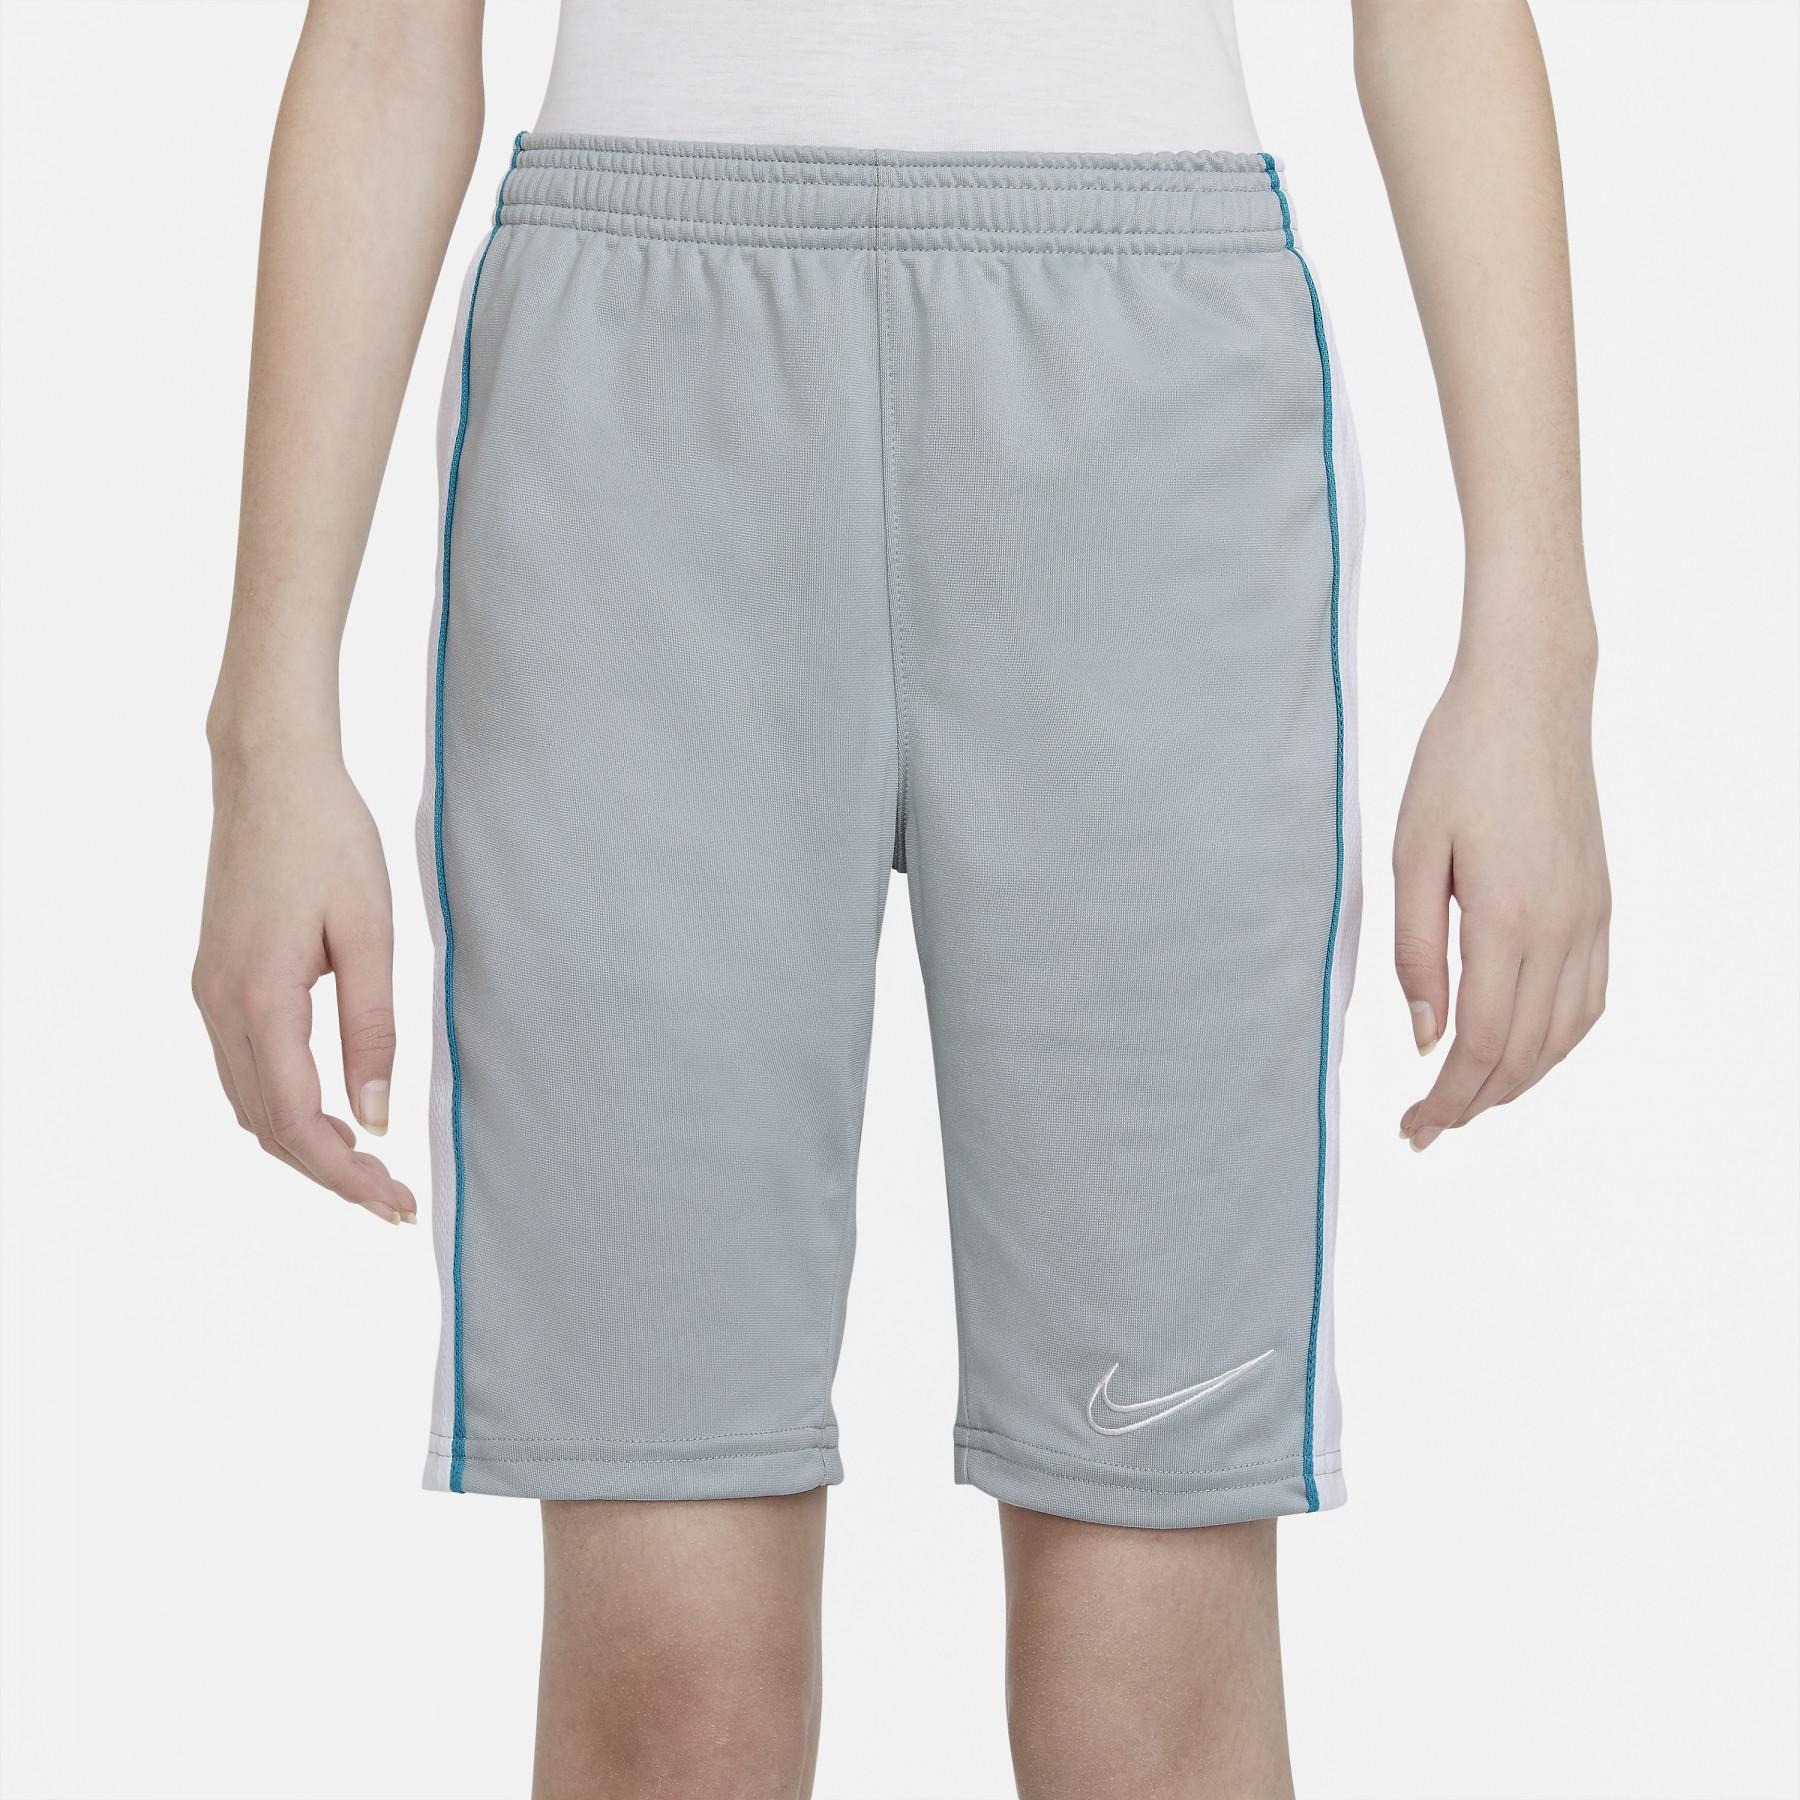 Pantalones cortos para niños Nike M ACD M18